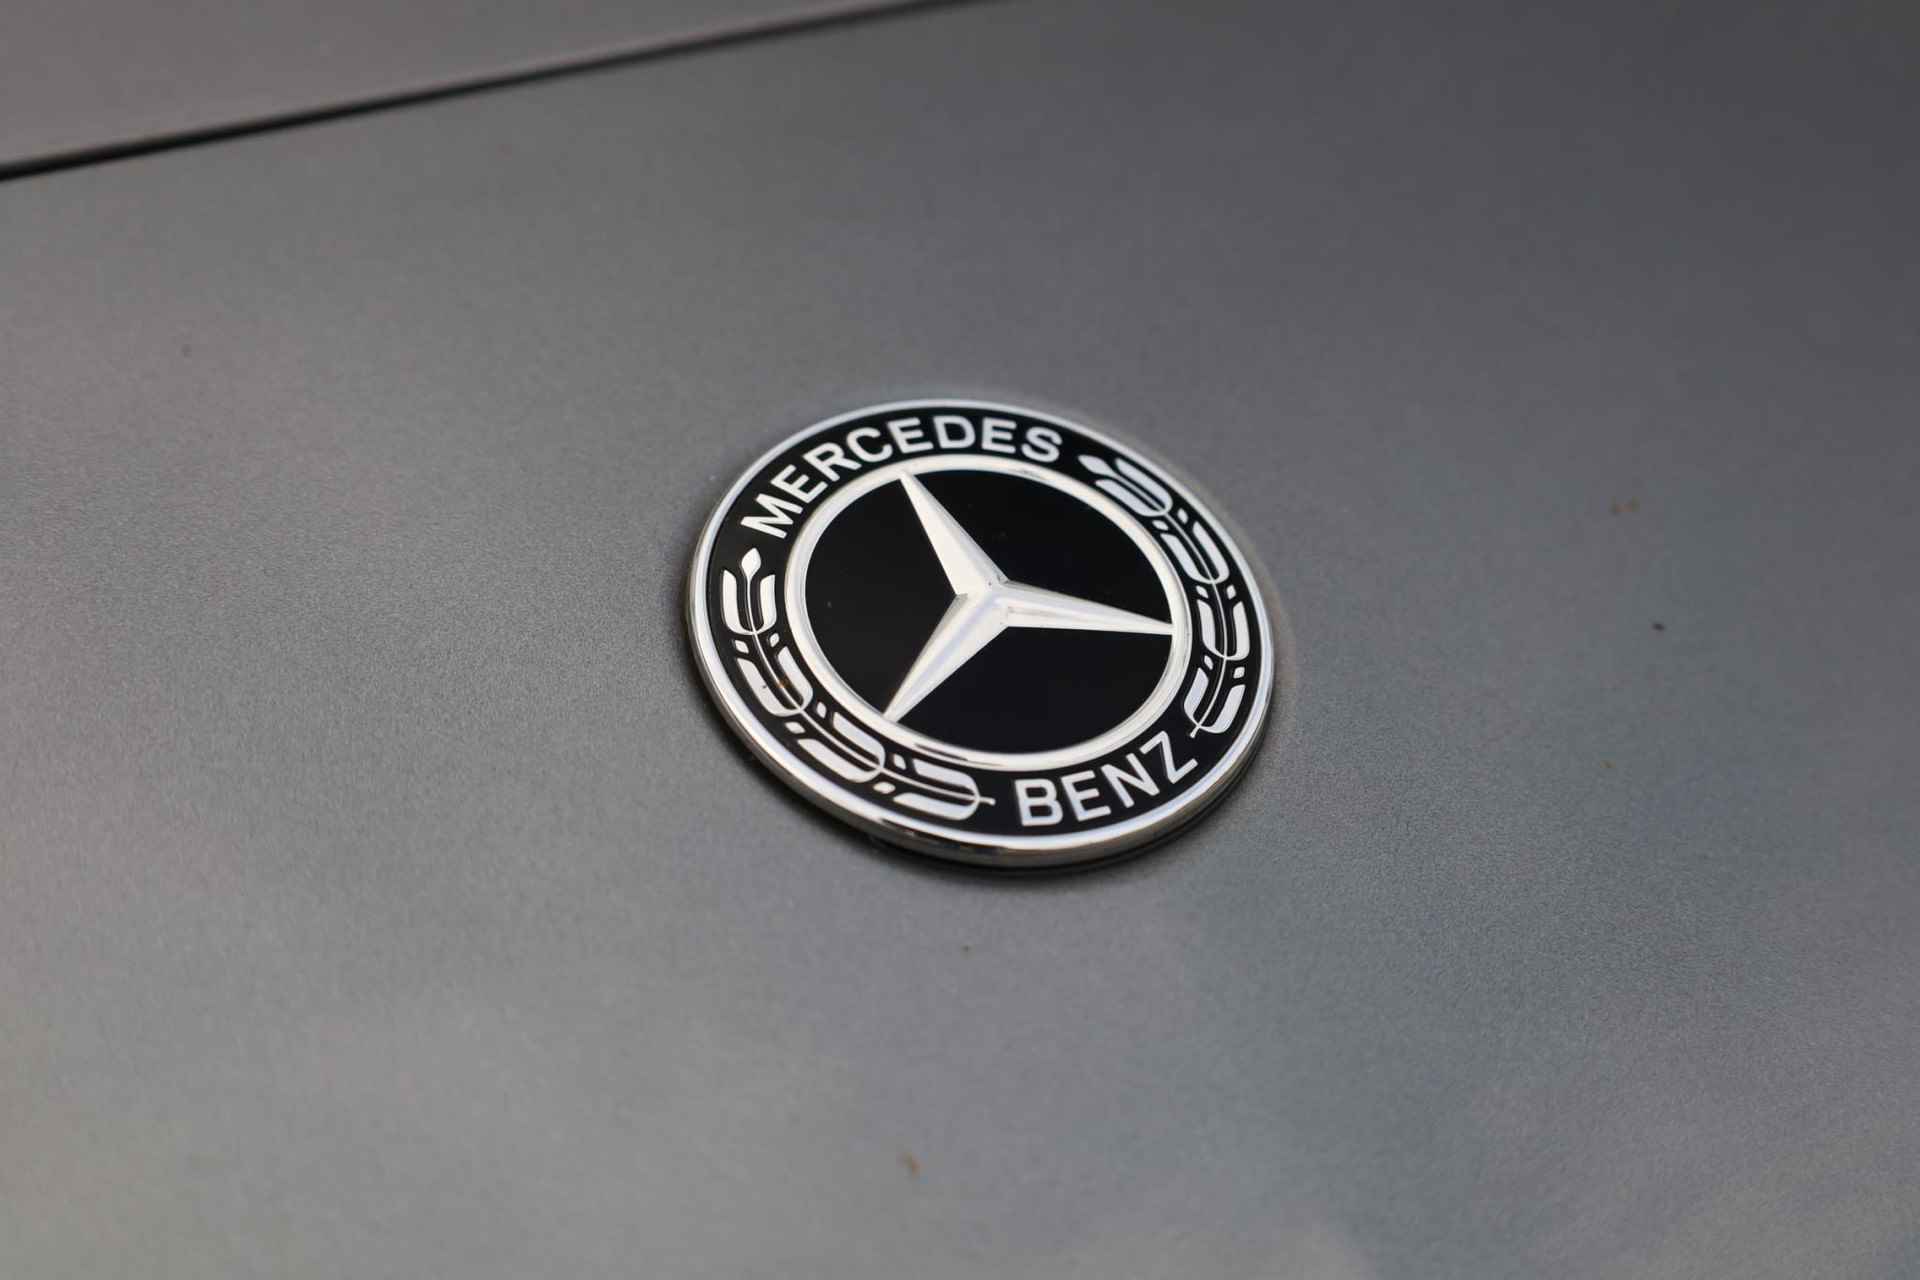 Mercedes-Benz A-klasse 200 Business Solution AMG 120KW/163PK automaat, Leder / alcantara, winterset LMV digitaal dashboard, navigatie, LED verlichting voor en achter, 18" LMV, stoelverwarming, parkeersensoren voor en achter, AMG bumpers - 9/44